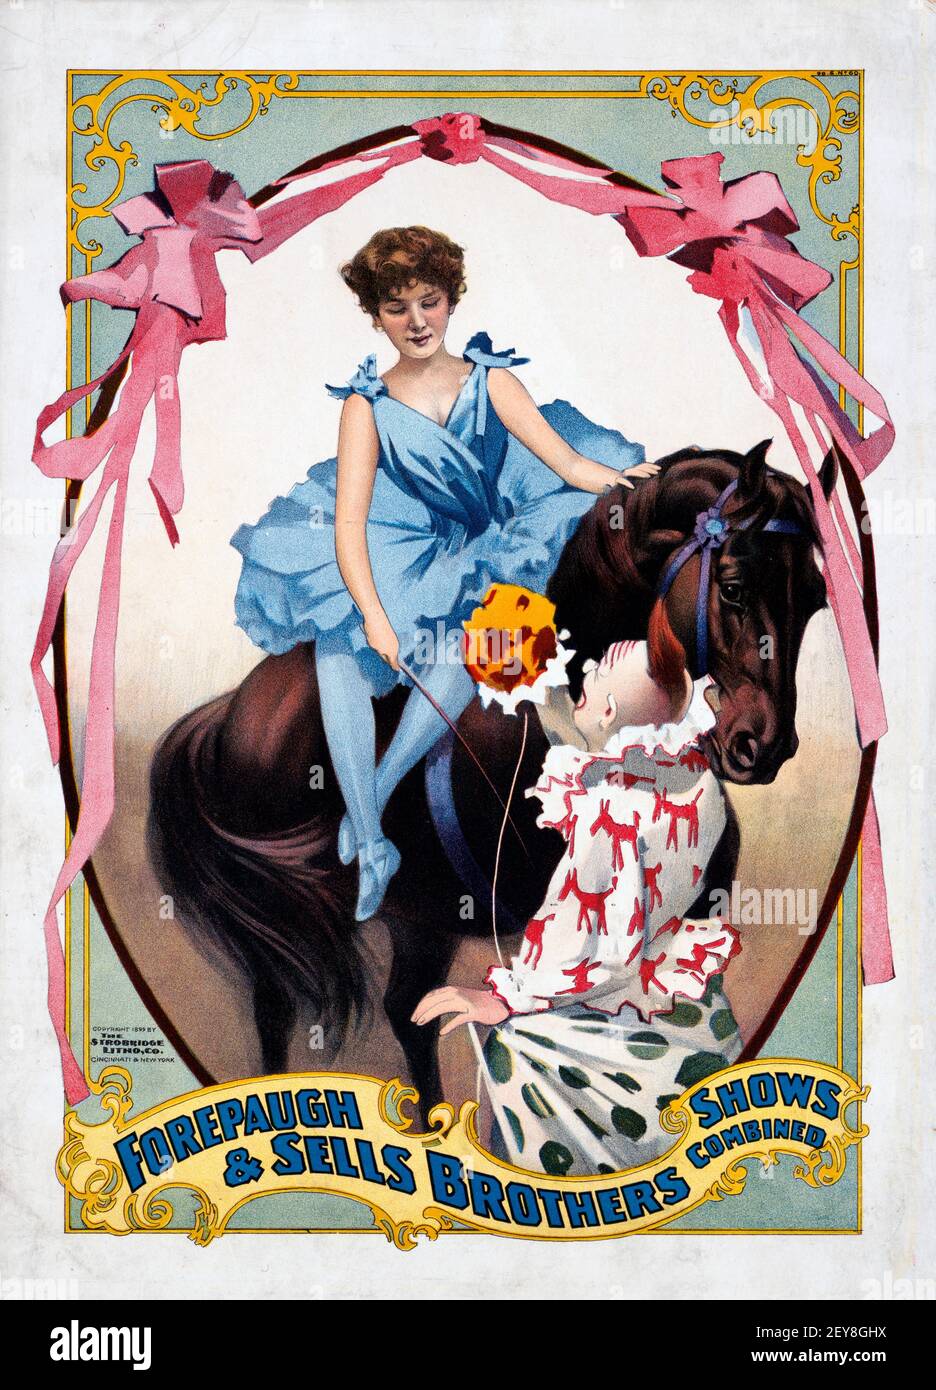 Forepaugh und verkauft Brothers. Zeigt kombiniert an. Mädchen auf einem Pferd und Clown. Zirkusposter, antik und im alten Stil. Farbbänder. Stockfoto